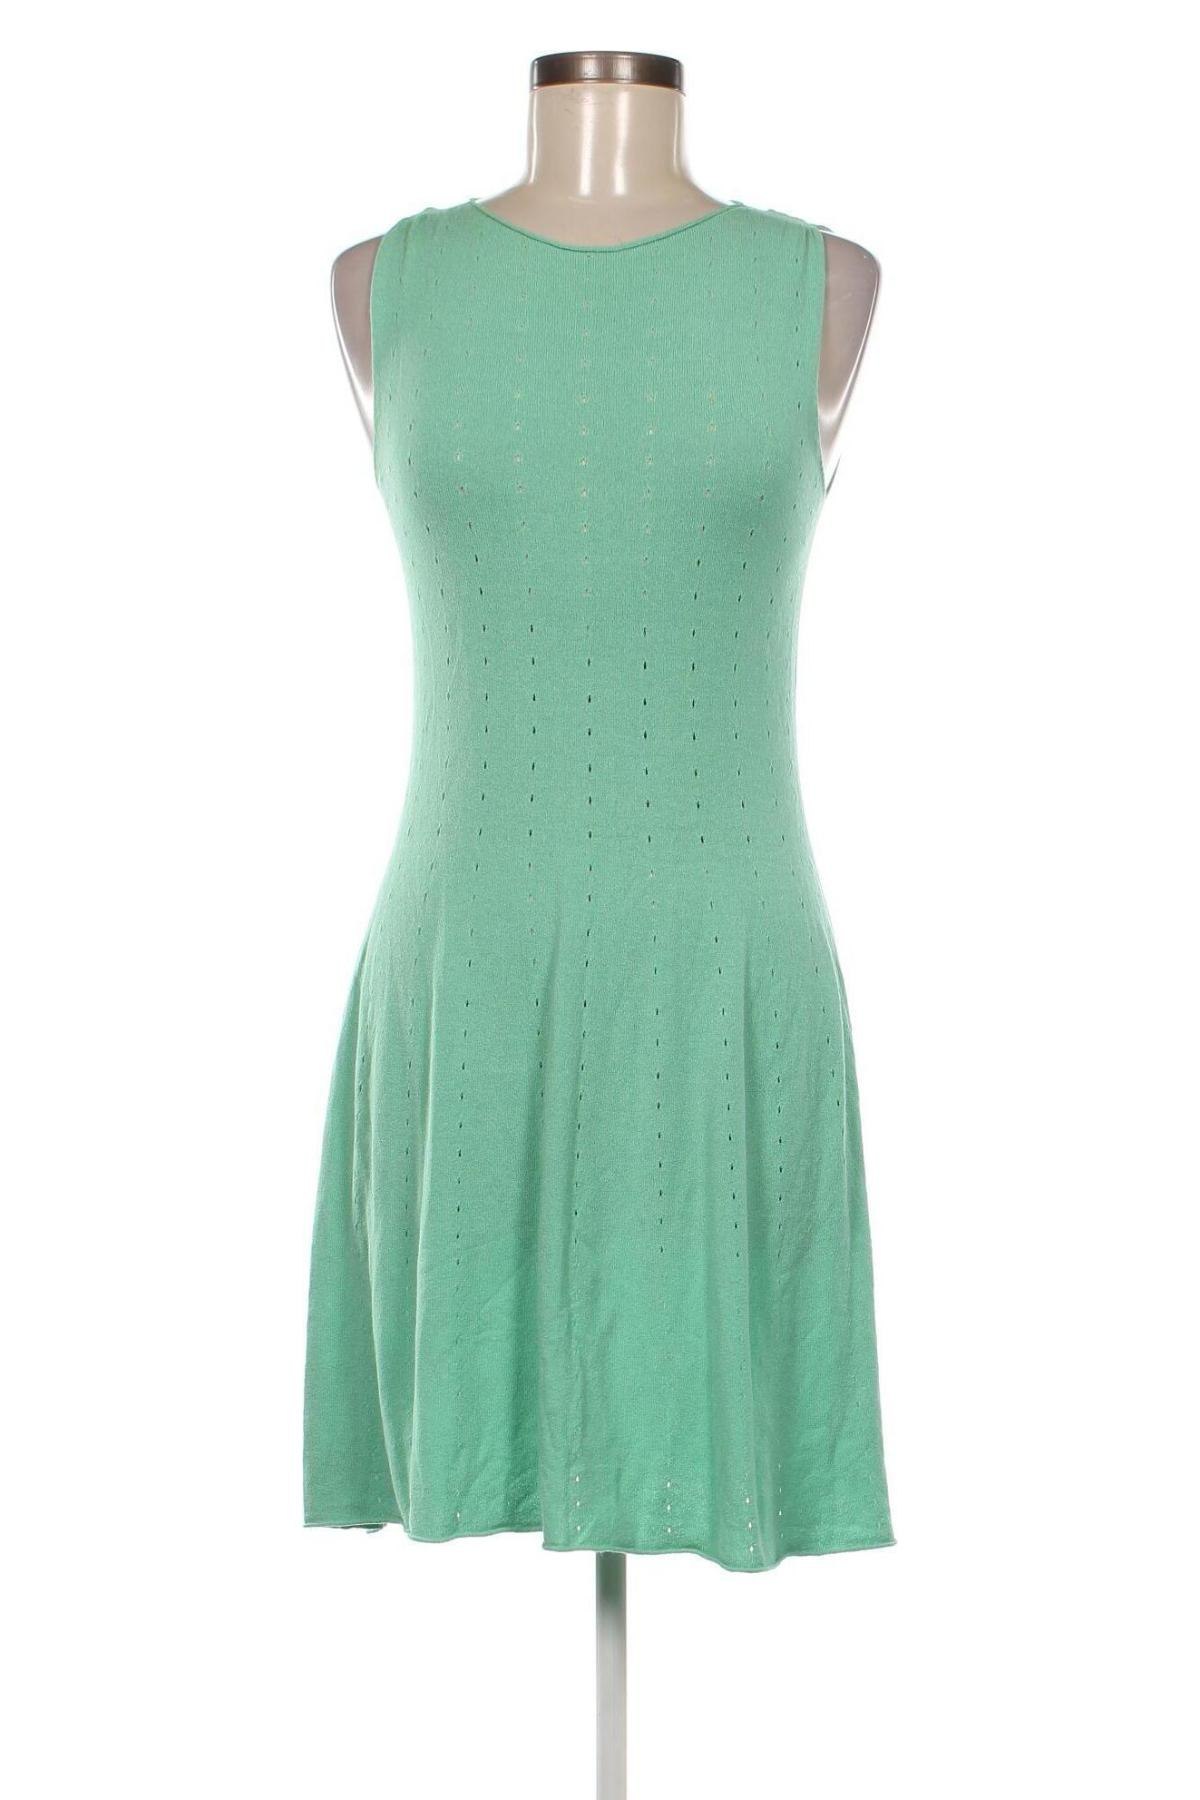 Φόρεμα Chantall, Μέγεθος M, Χρώμα Πράσινο, Τιμή 13,00 €